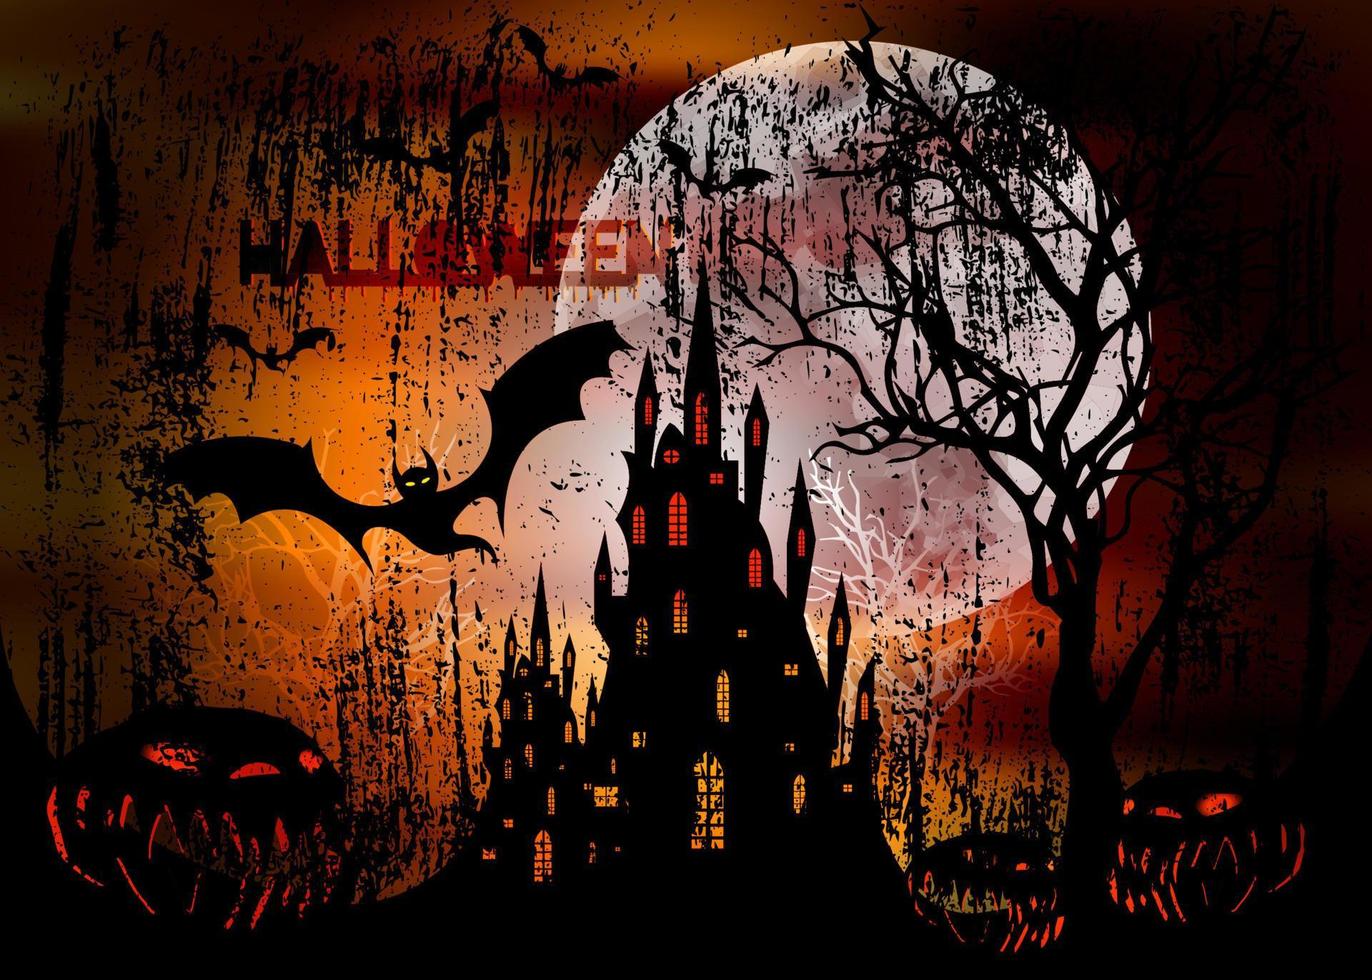 fête d'halloween, illustration vectorielle mystique, fond orange foncé sur une pleine lune effrayante avec des silhouettes de personnages et des chauves-souris effrayantes avec un château hanté gothique, concept de thème d'horreur vecteur